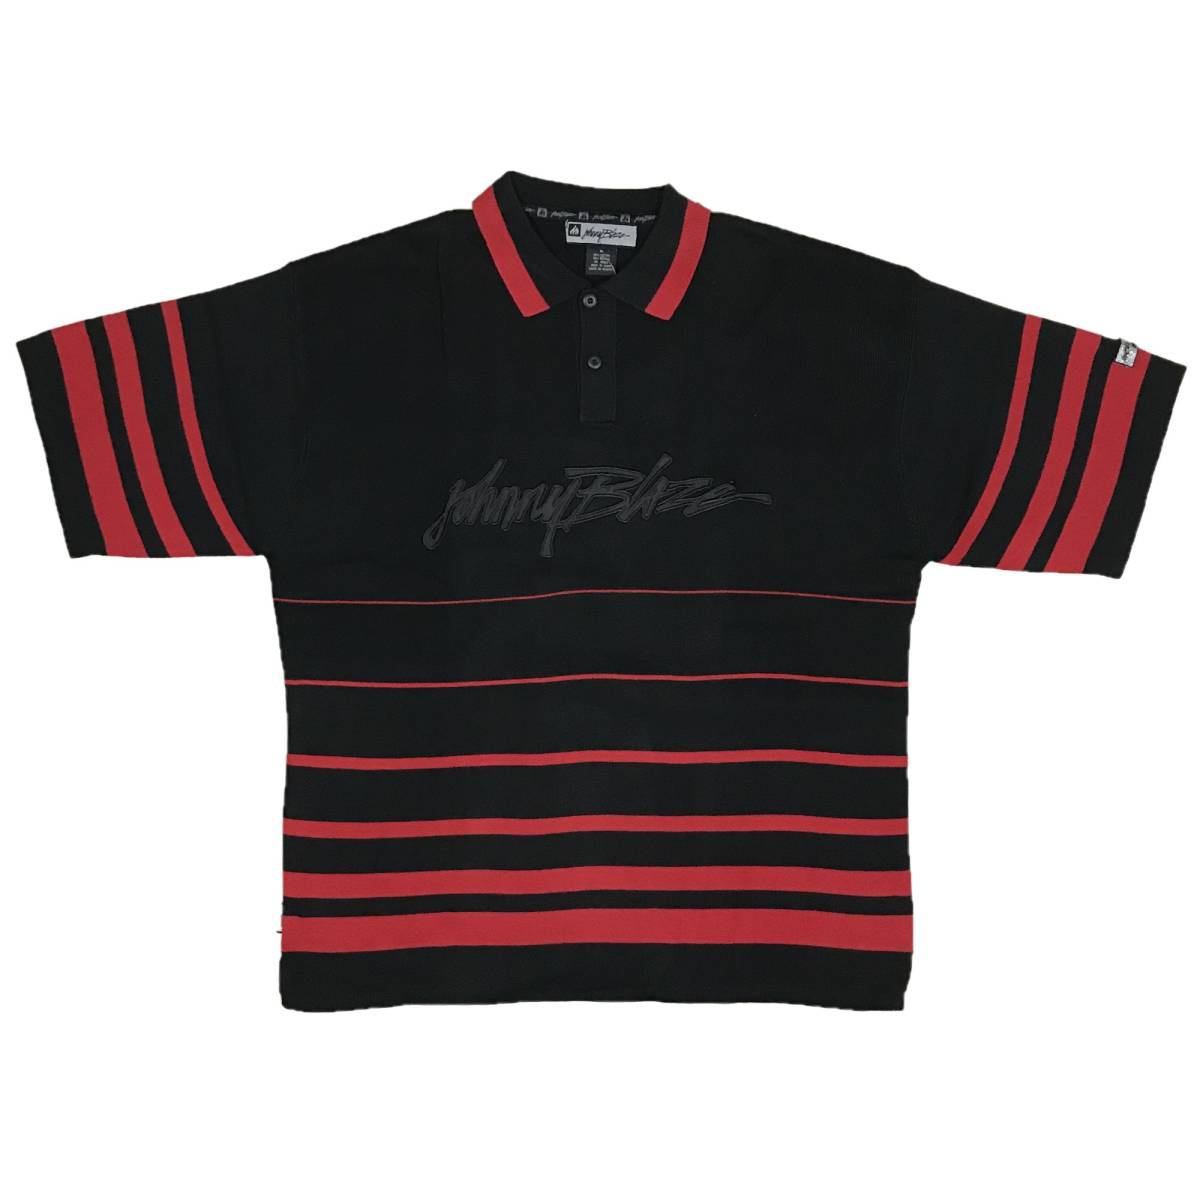 [並行輸入品] JOHNNY BLAZE ジョニーブレイズ ボタンポロタイプ 半袖 サマー セーター (ブラック/レッド) (XL)